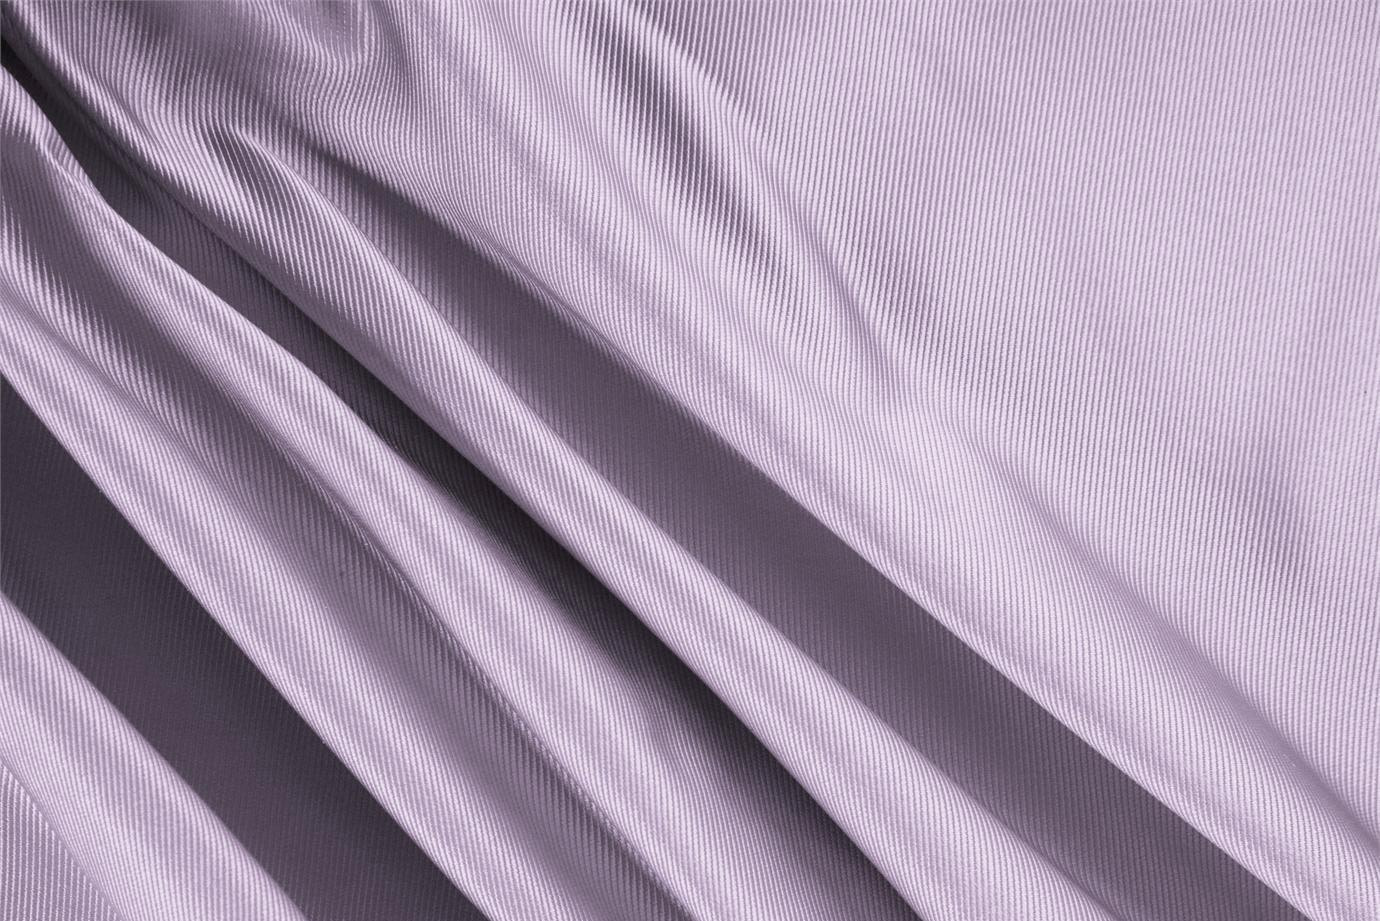 Tessuto Dogaressa Viola Glicine in Seta per Abbigliamento UN000011